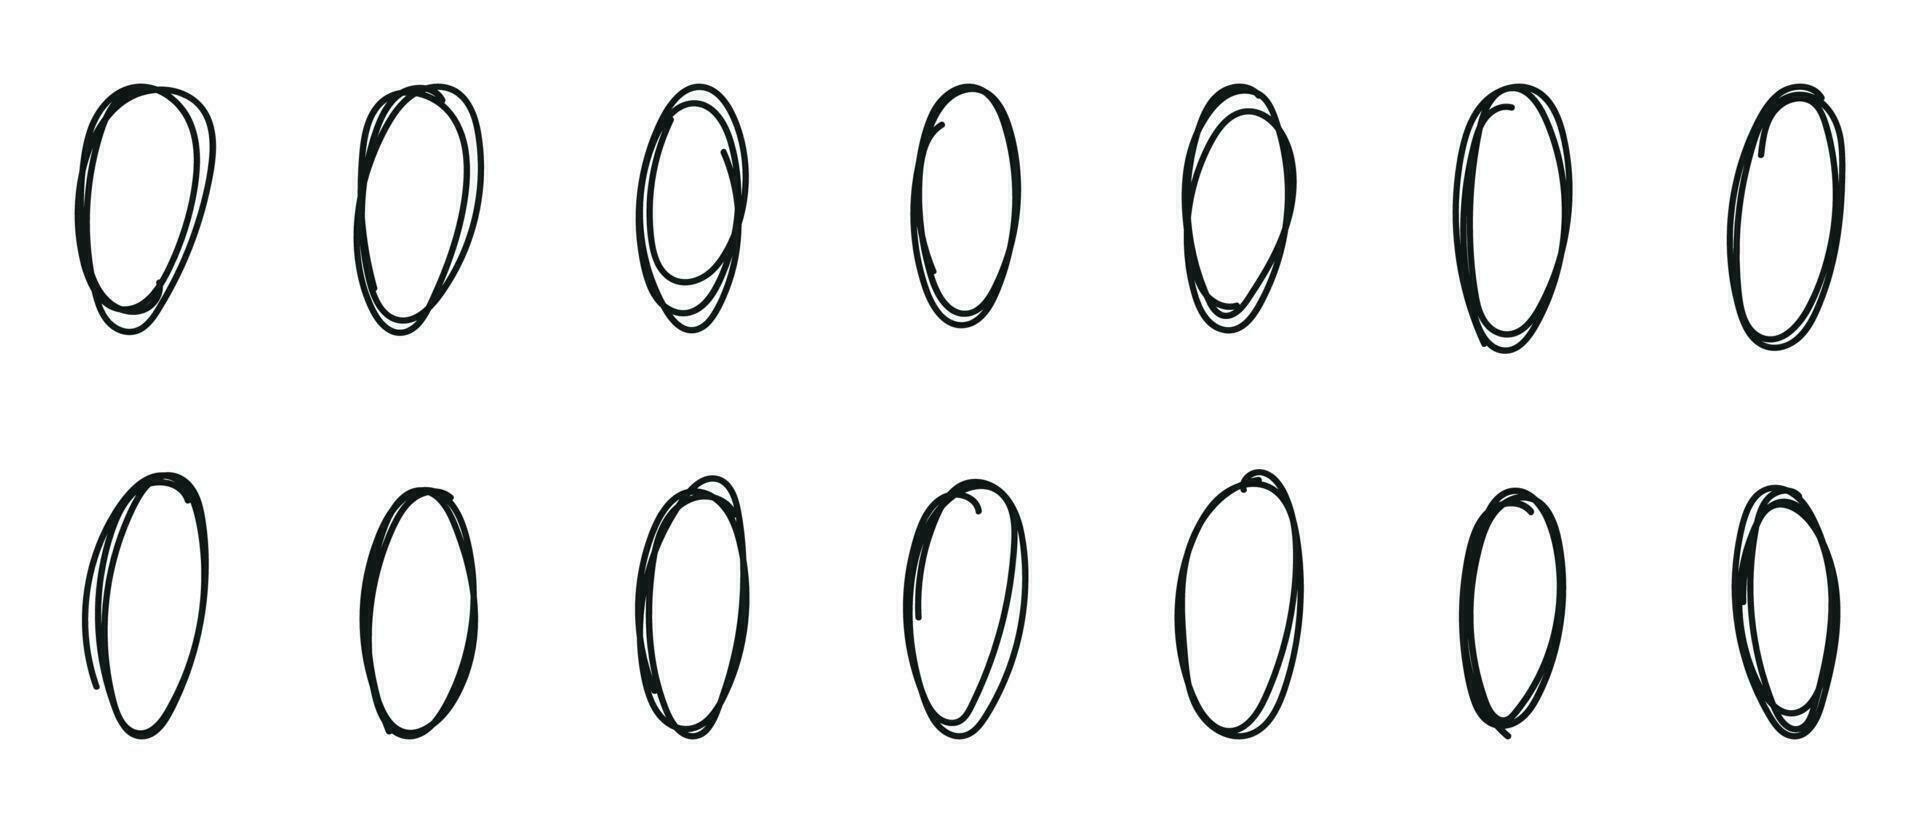 oval redondo desenhado à mão no estilo doodle. traçado de linha de caneta para realçar o texto. ilustração vetorial isolada de elementos vetor